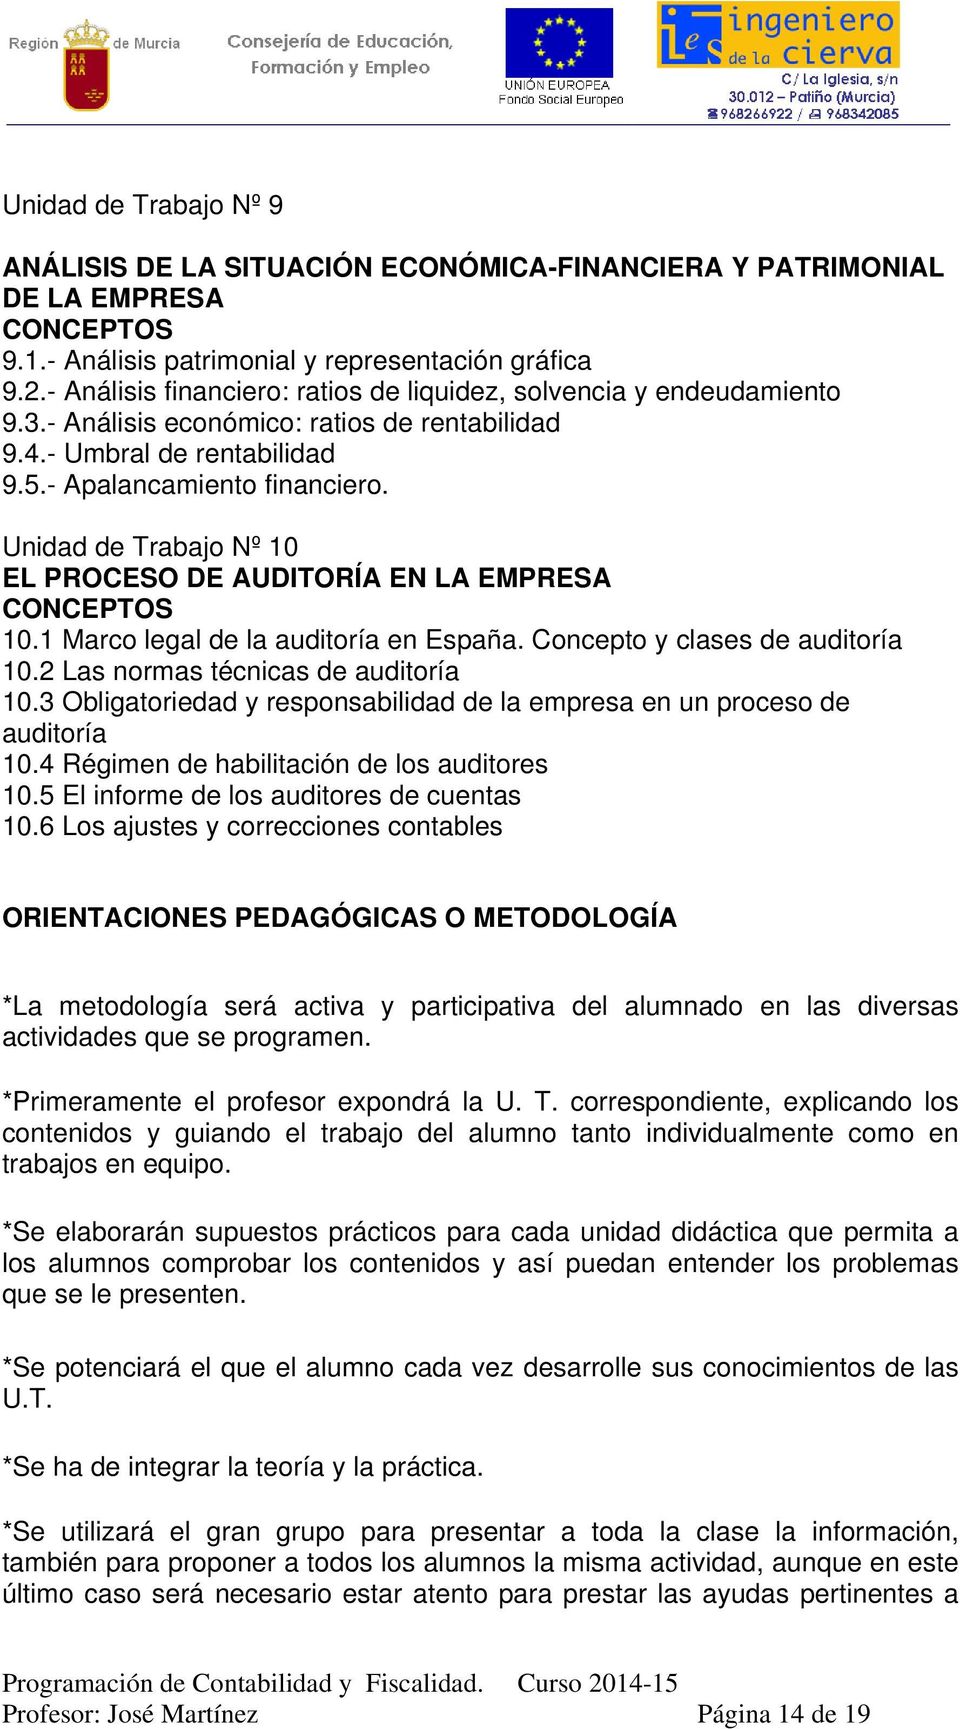 Unidad de Trabajo Nº 10 EL PROCESO DE AUDITORÍA EN LA EMPRESA 10.1 Marco legal de la auditoría en España. Concepto y clases de auditoría 10.2 Las normas técnicas de auditoría 10.